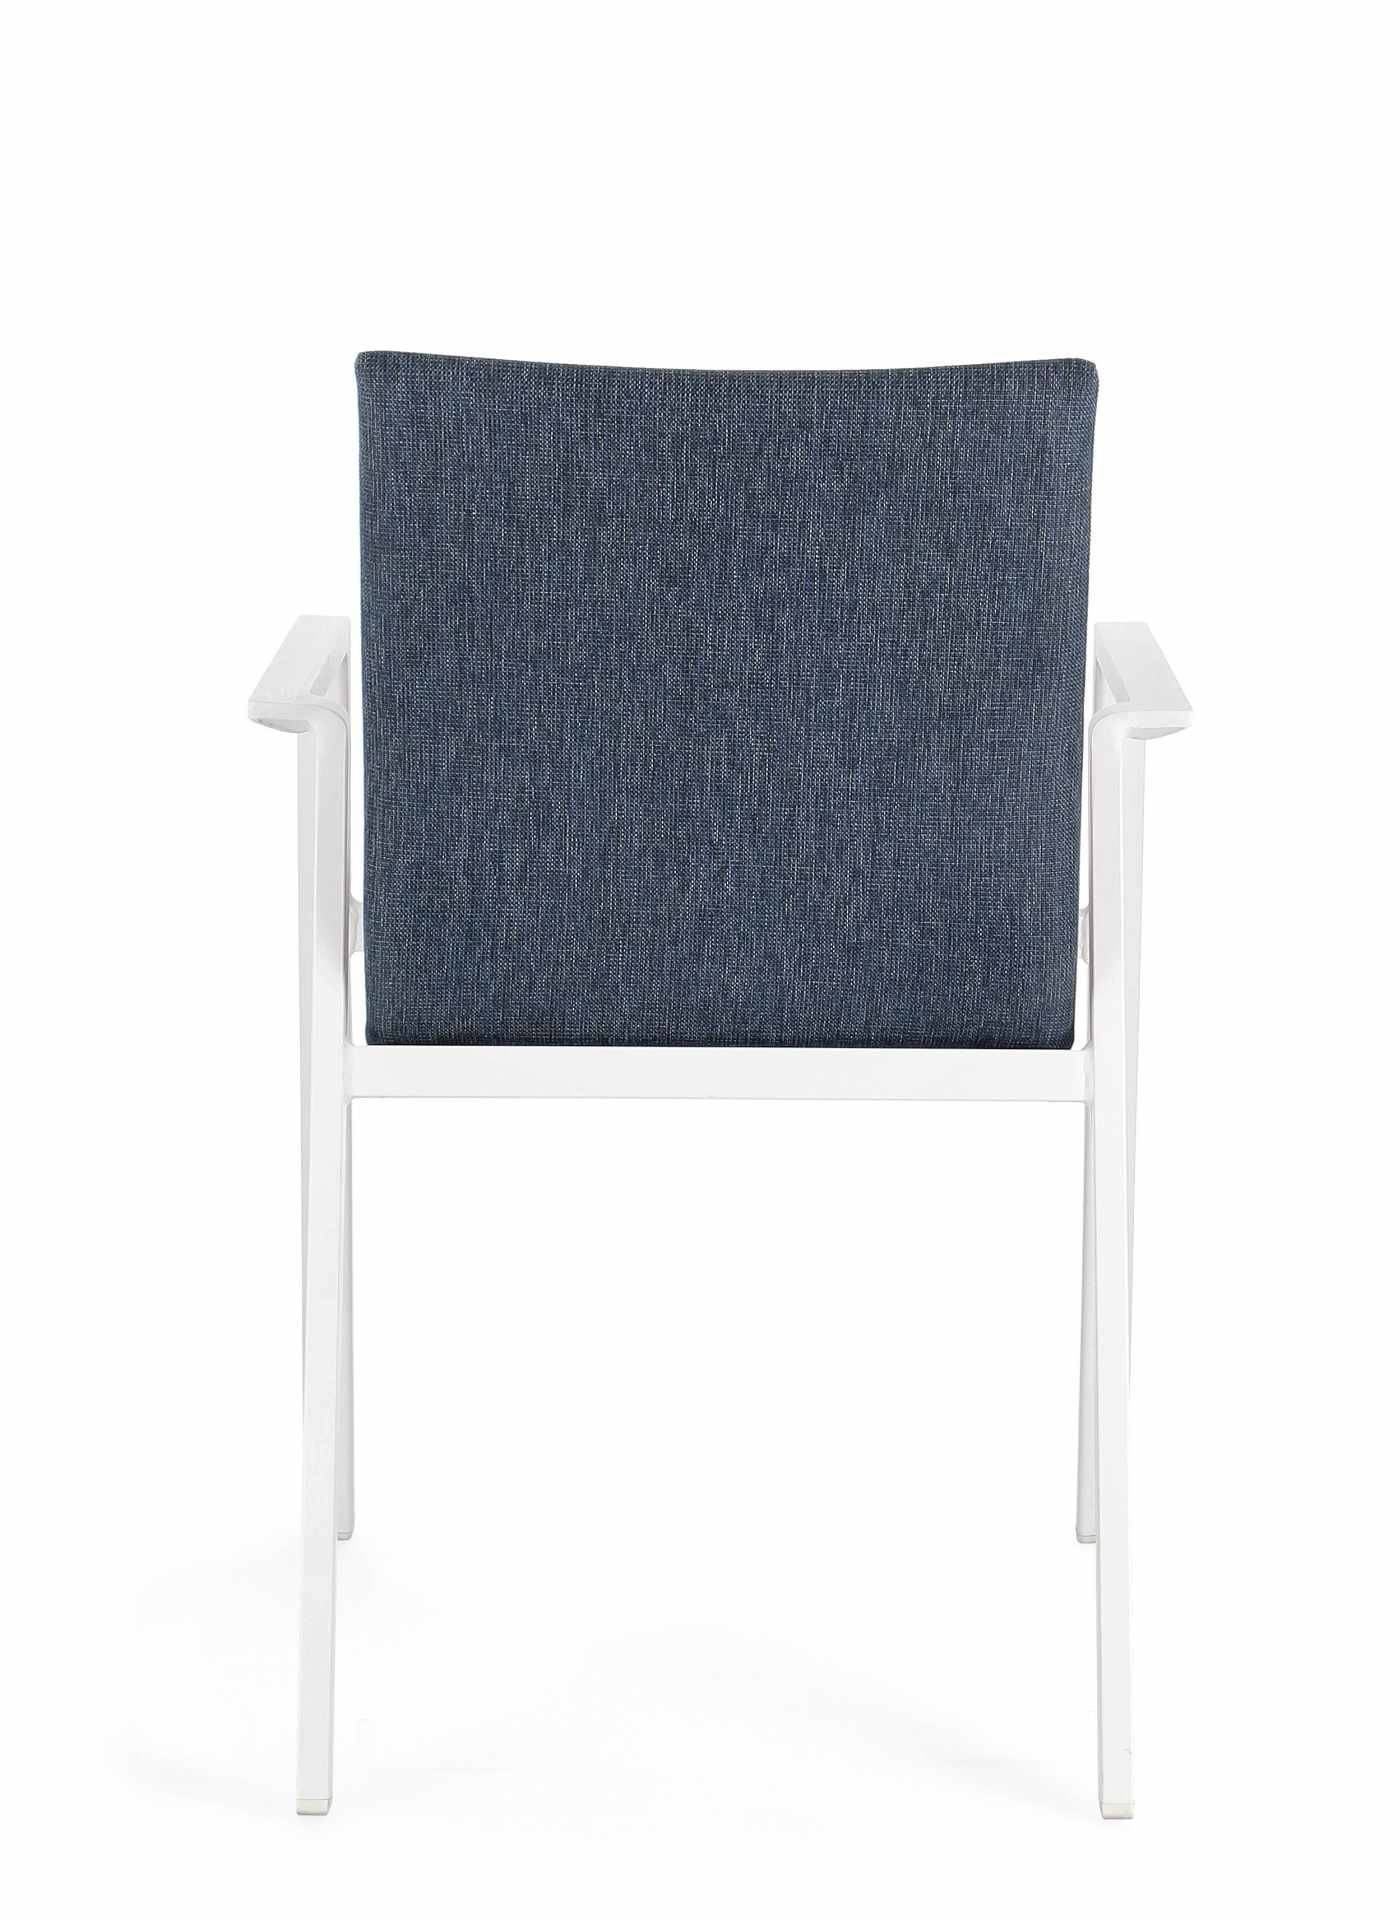 Der Gartenstuhl Odeon überzeugt mit seinem modernen Design. Gefertigt wurde er aus einem Mischstoff, welcher einen blauen Farbton besitzt. Das Gestell ist aus Aluminium und hat auch eine weiße Farbe. Der Stuhl verfügt über eine Sitzhöhe von 47 cm und ist 